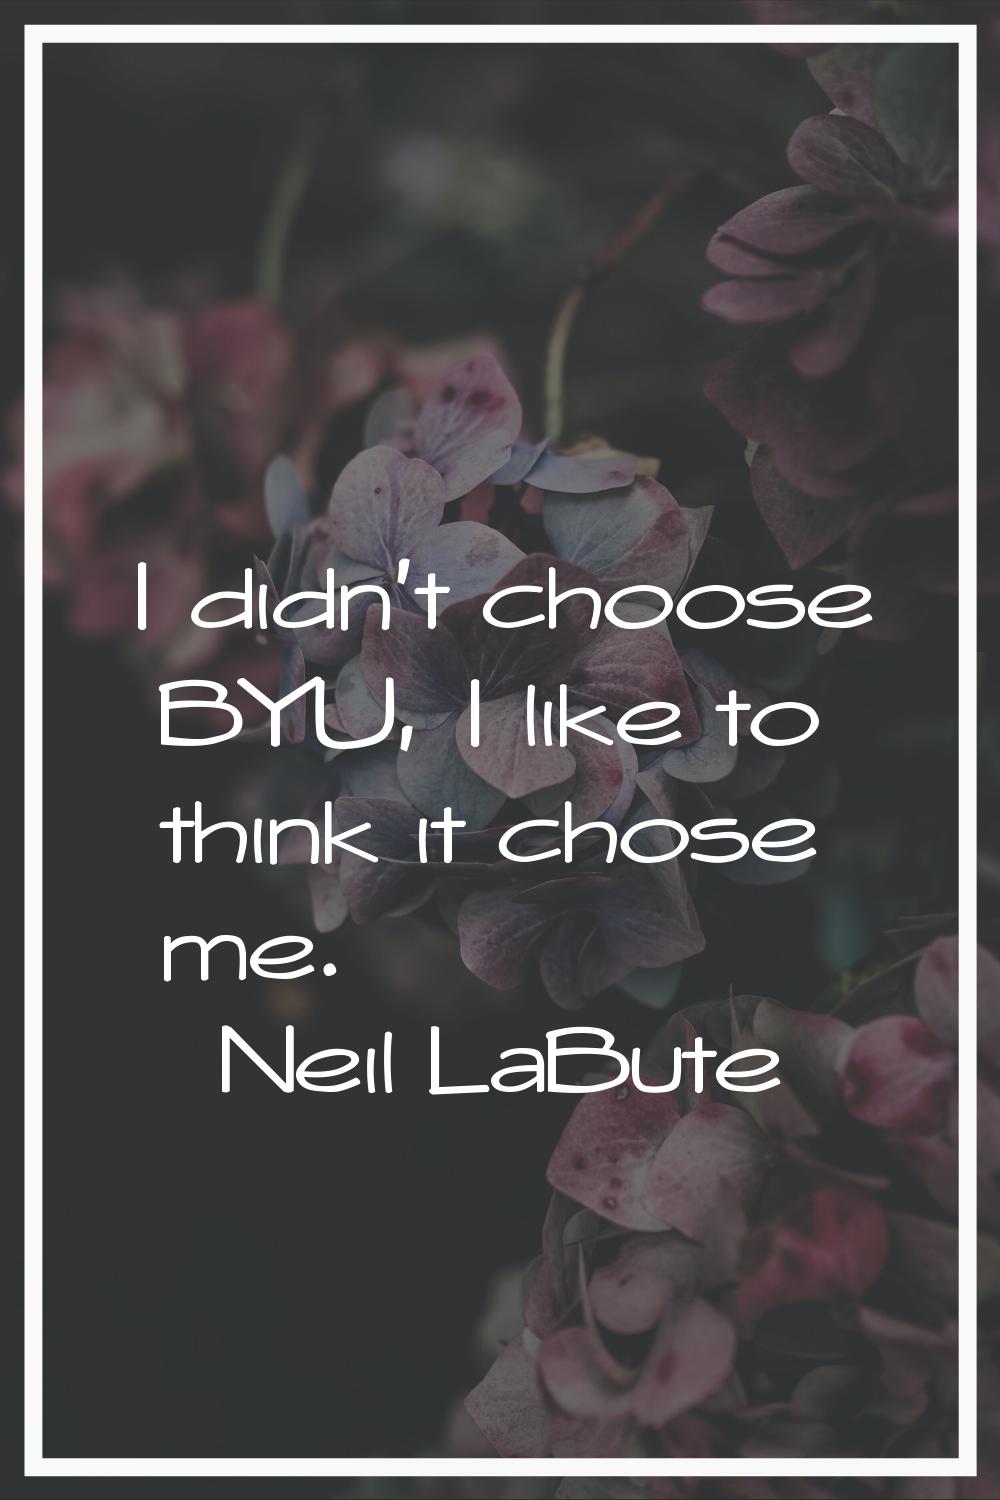 I didn't choose BYU, I like to think it chose me.